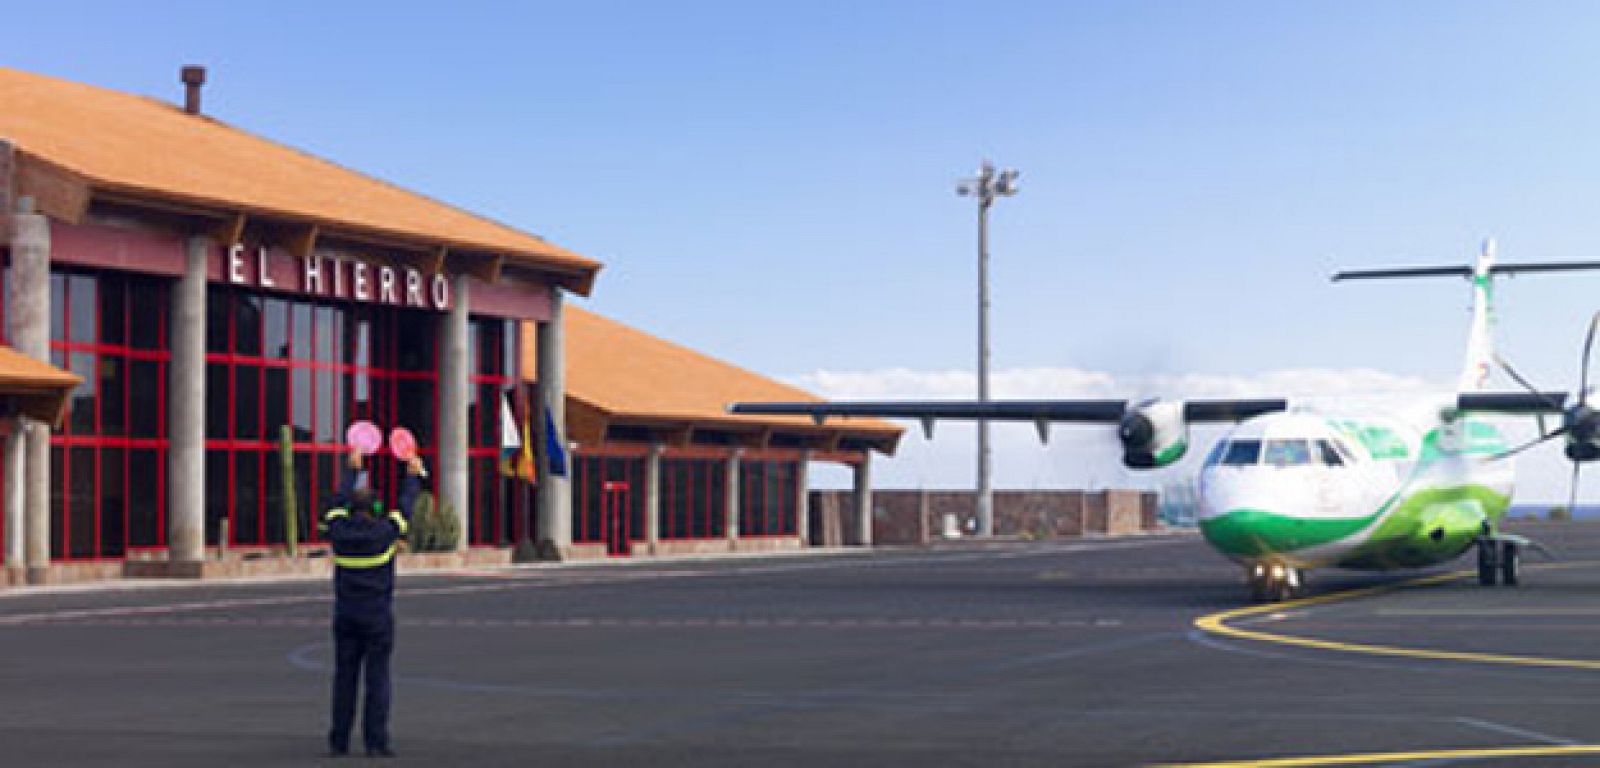 Aeropuerto de El Hierro